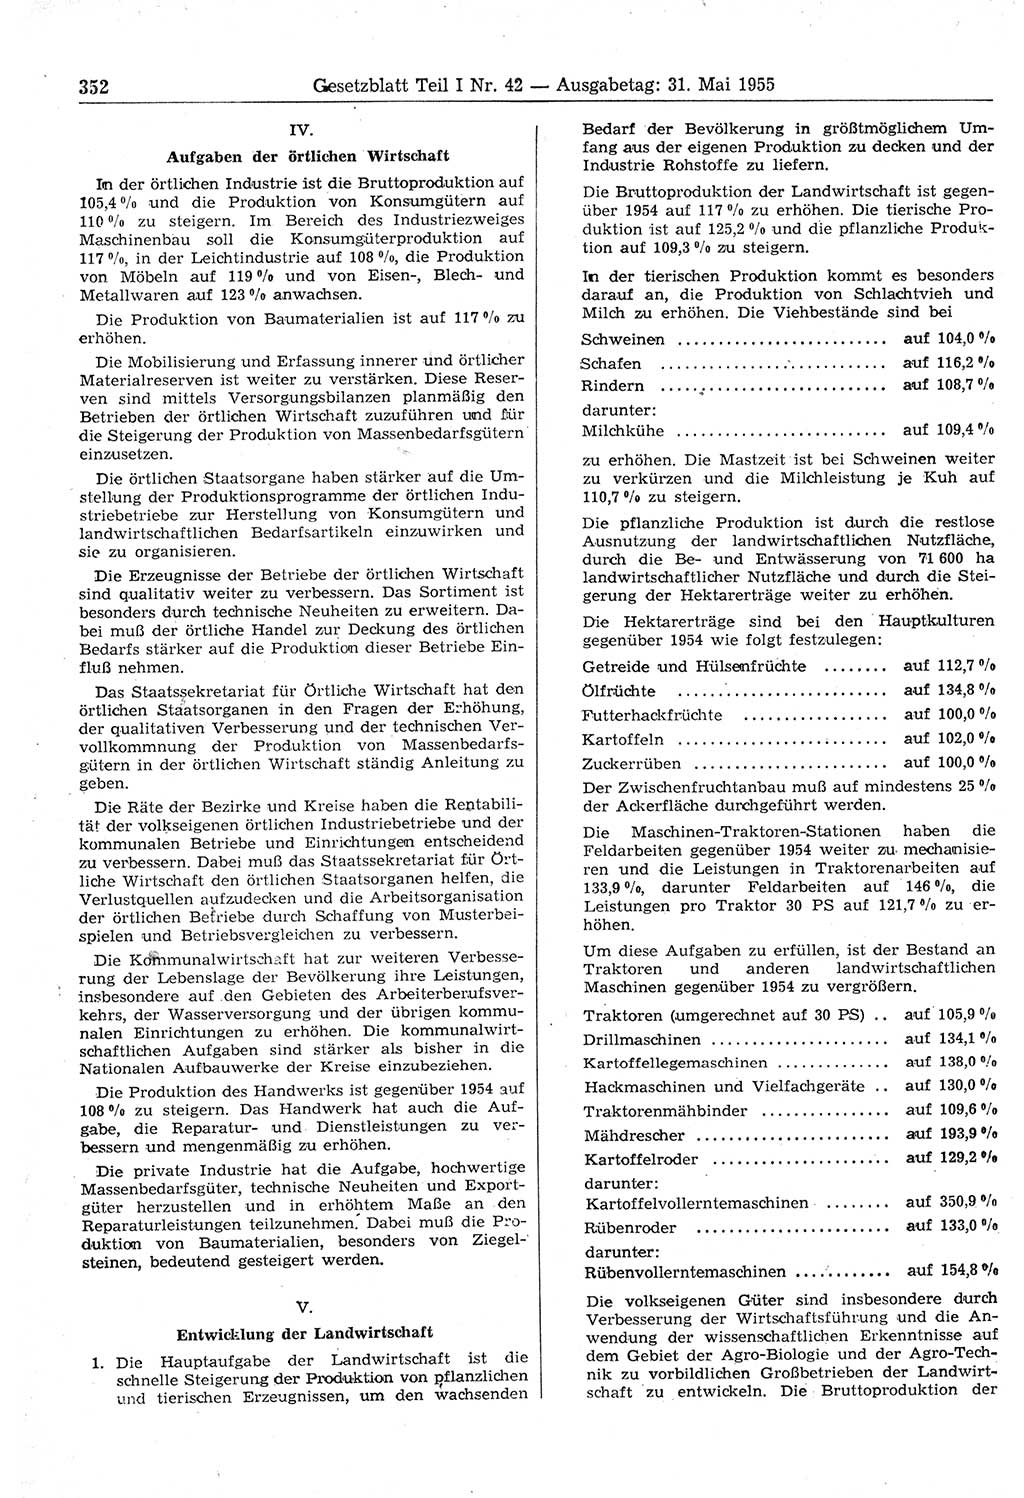 Gesetzblatt (GBl.) der Deutschen Demokratischen Republik (DDR) Teil Ⅰ 1955, Seite 352 (GBl. DDR Ⅰ 1955, S. 352)